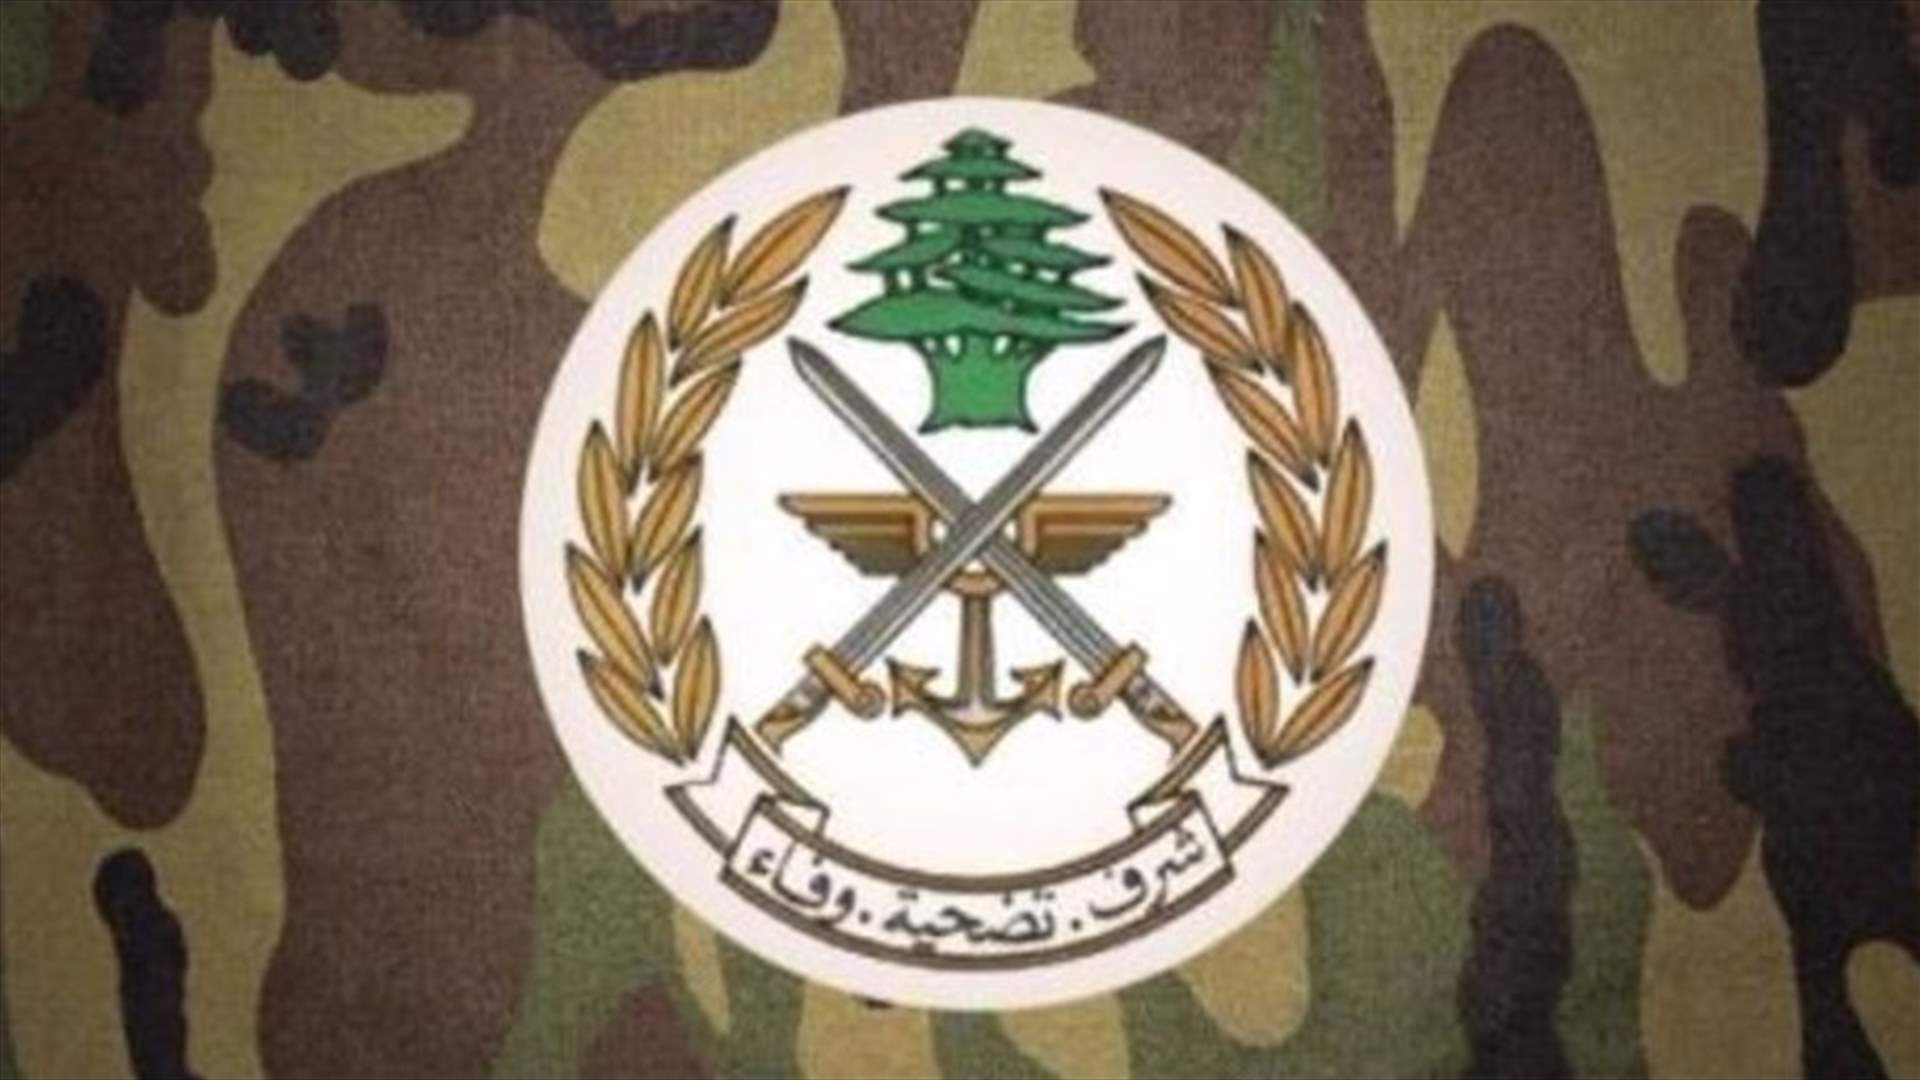 الجيش يعلن إستشهاد أحد العسكريين وإصابة آخرين نتيجة العمليات في طرابلس